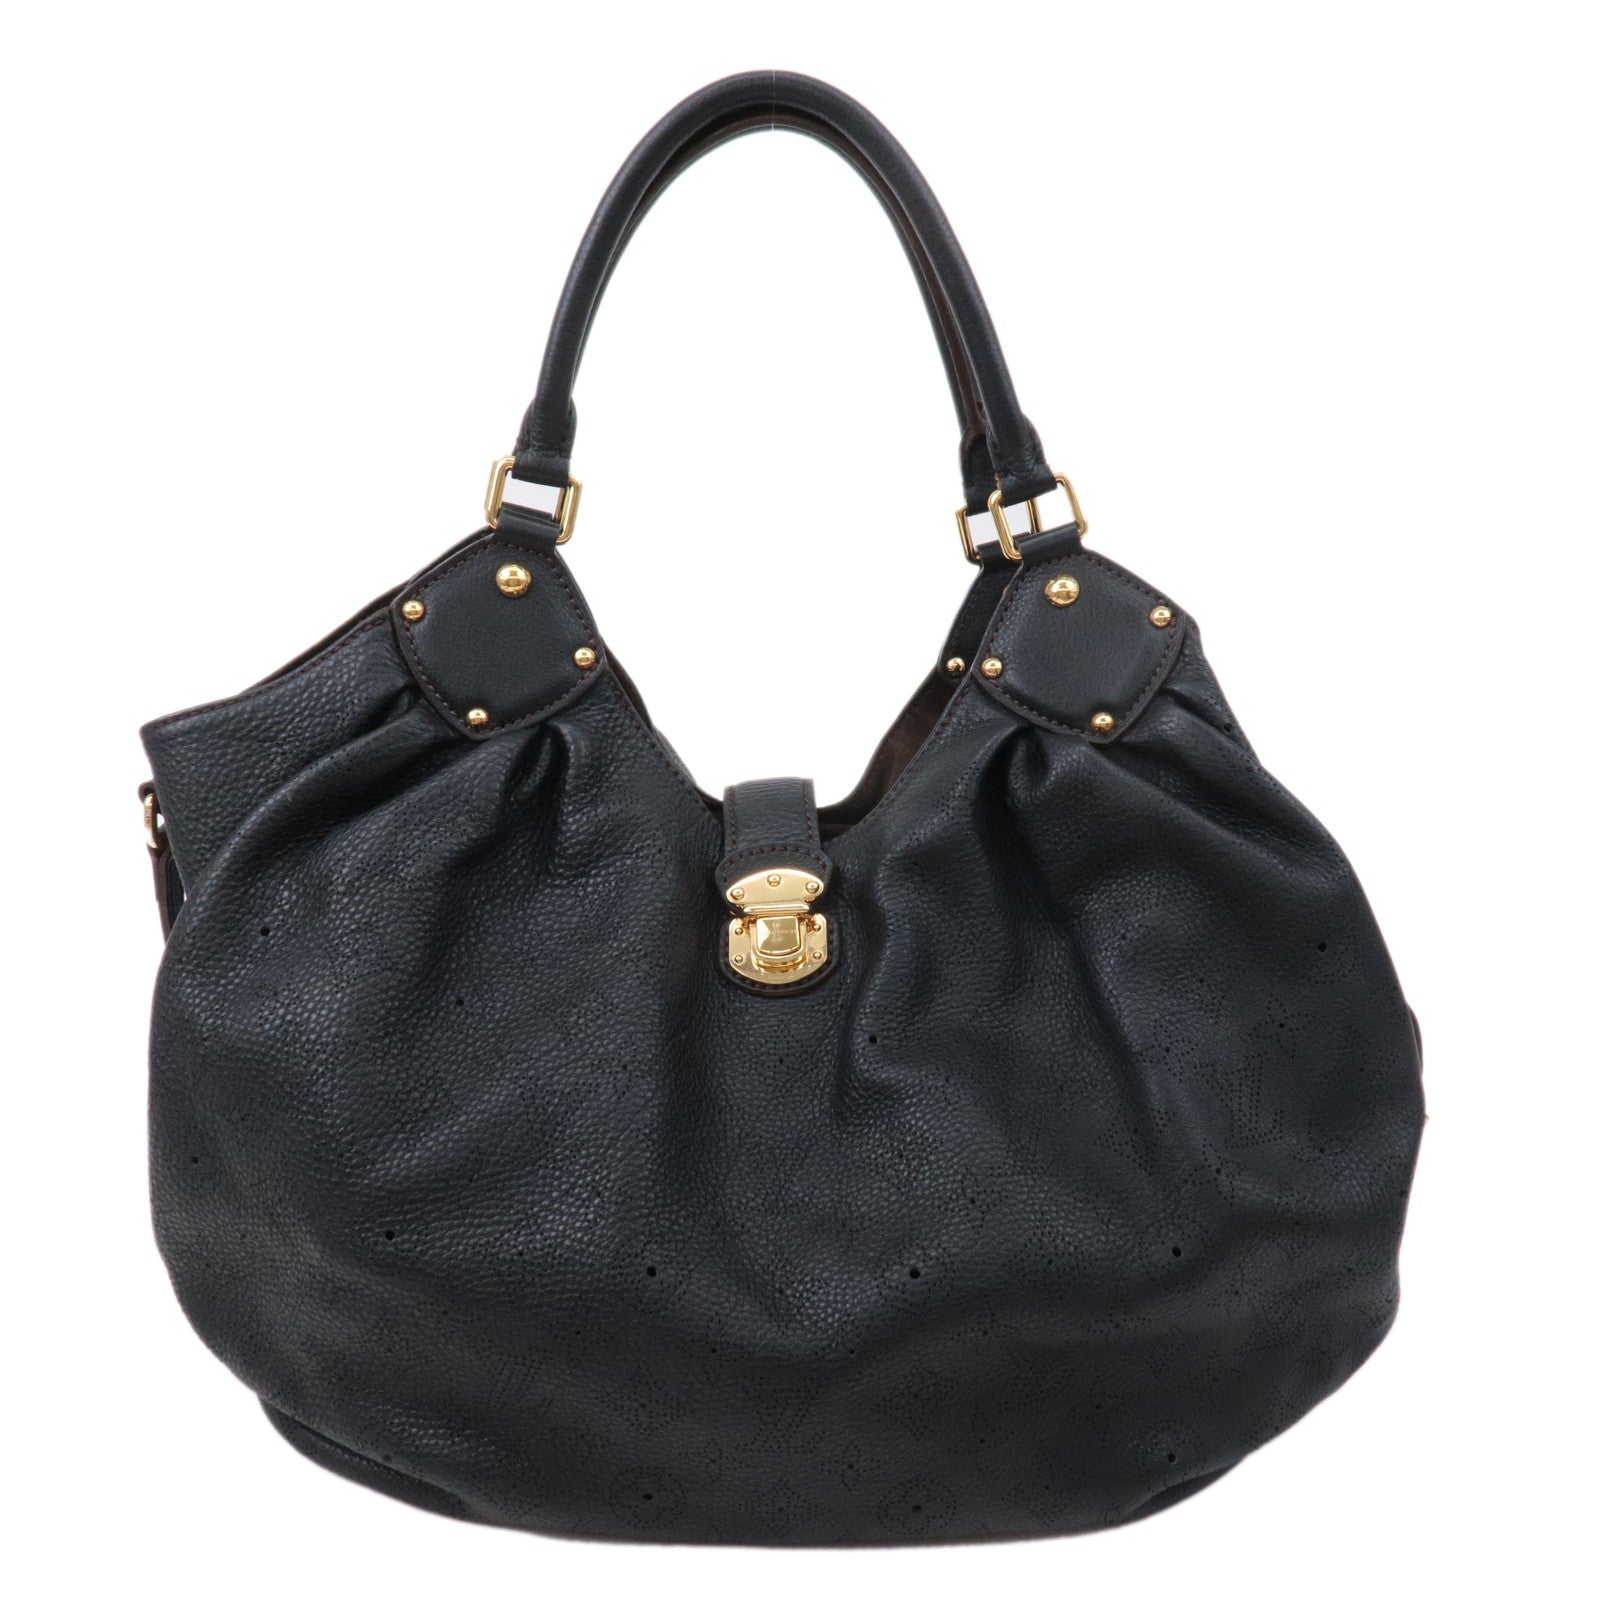 Stunning Louis Vuitton Handbag Designer Leather Monogram Bag 